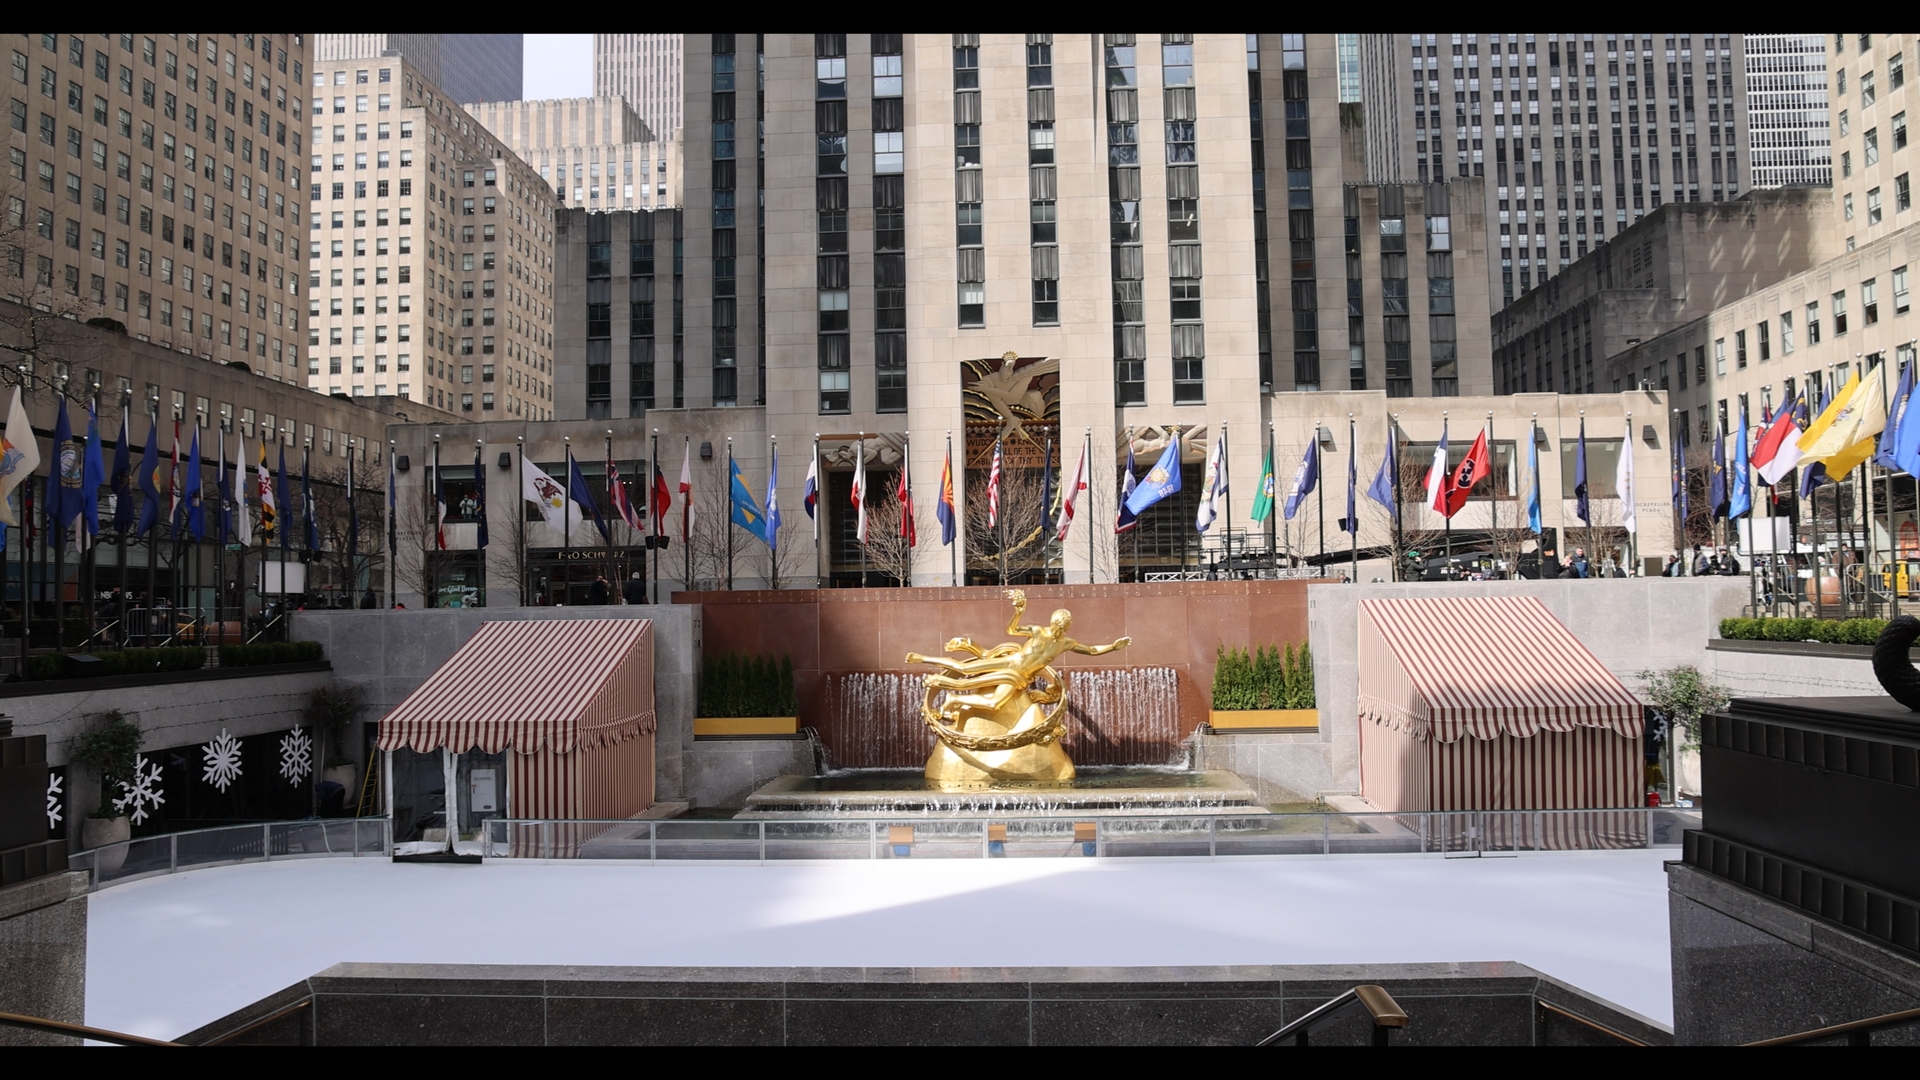 Rockefeller Center - New York